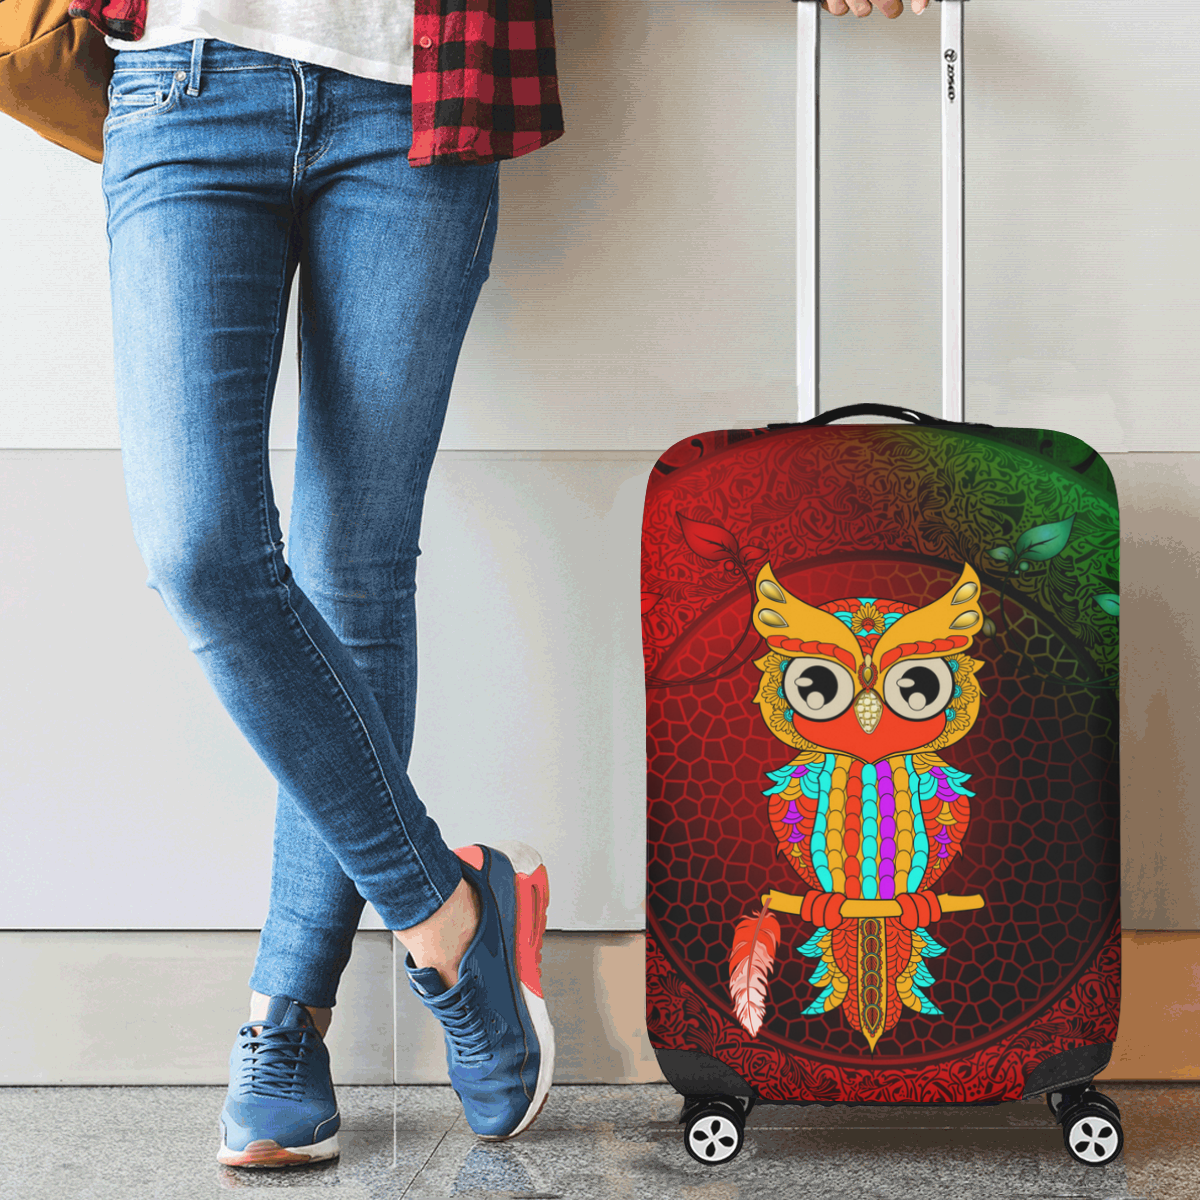 Cute owl, mandala design Luggage Cover/Small 18"-21"